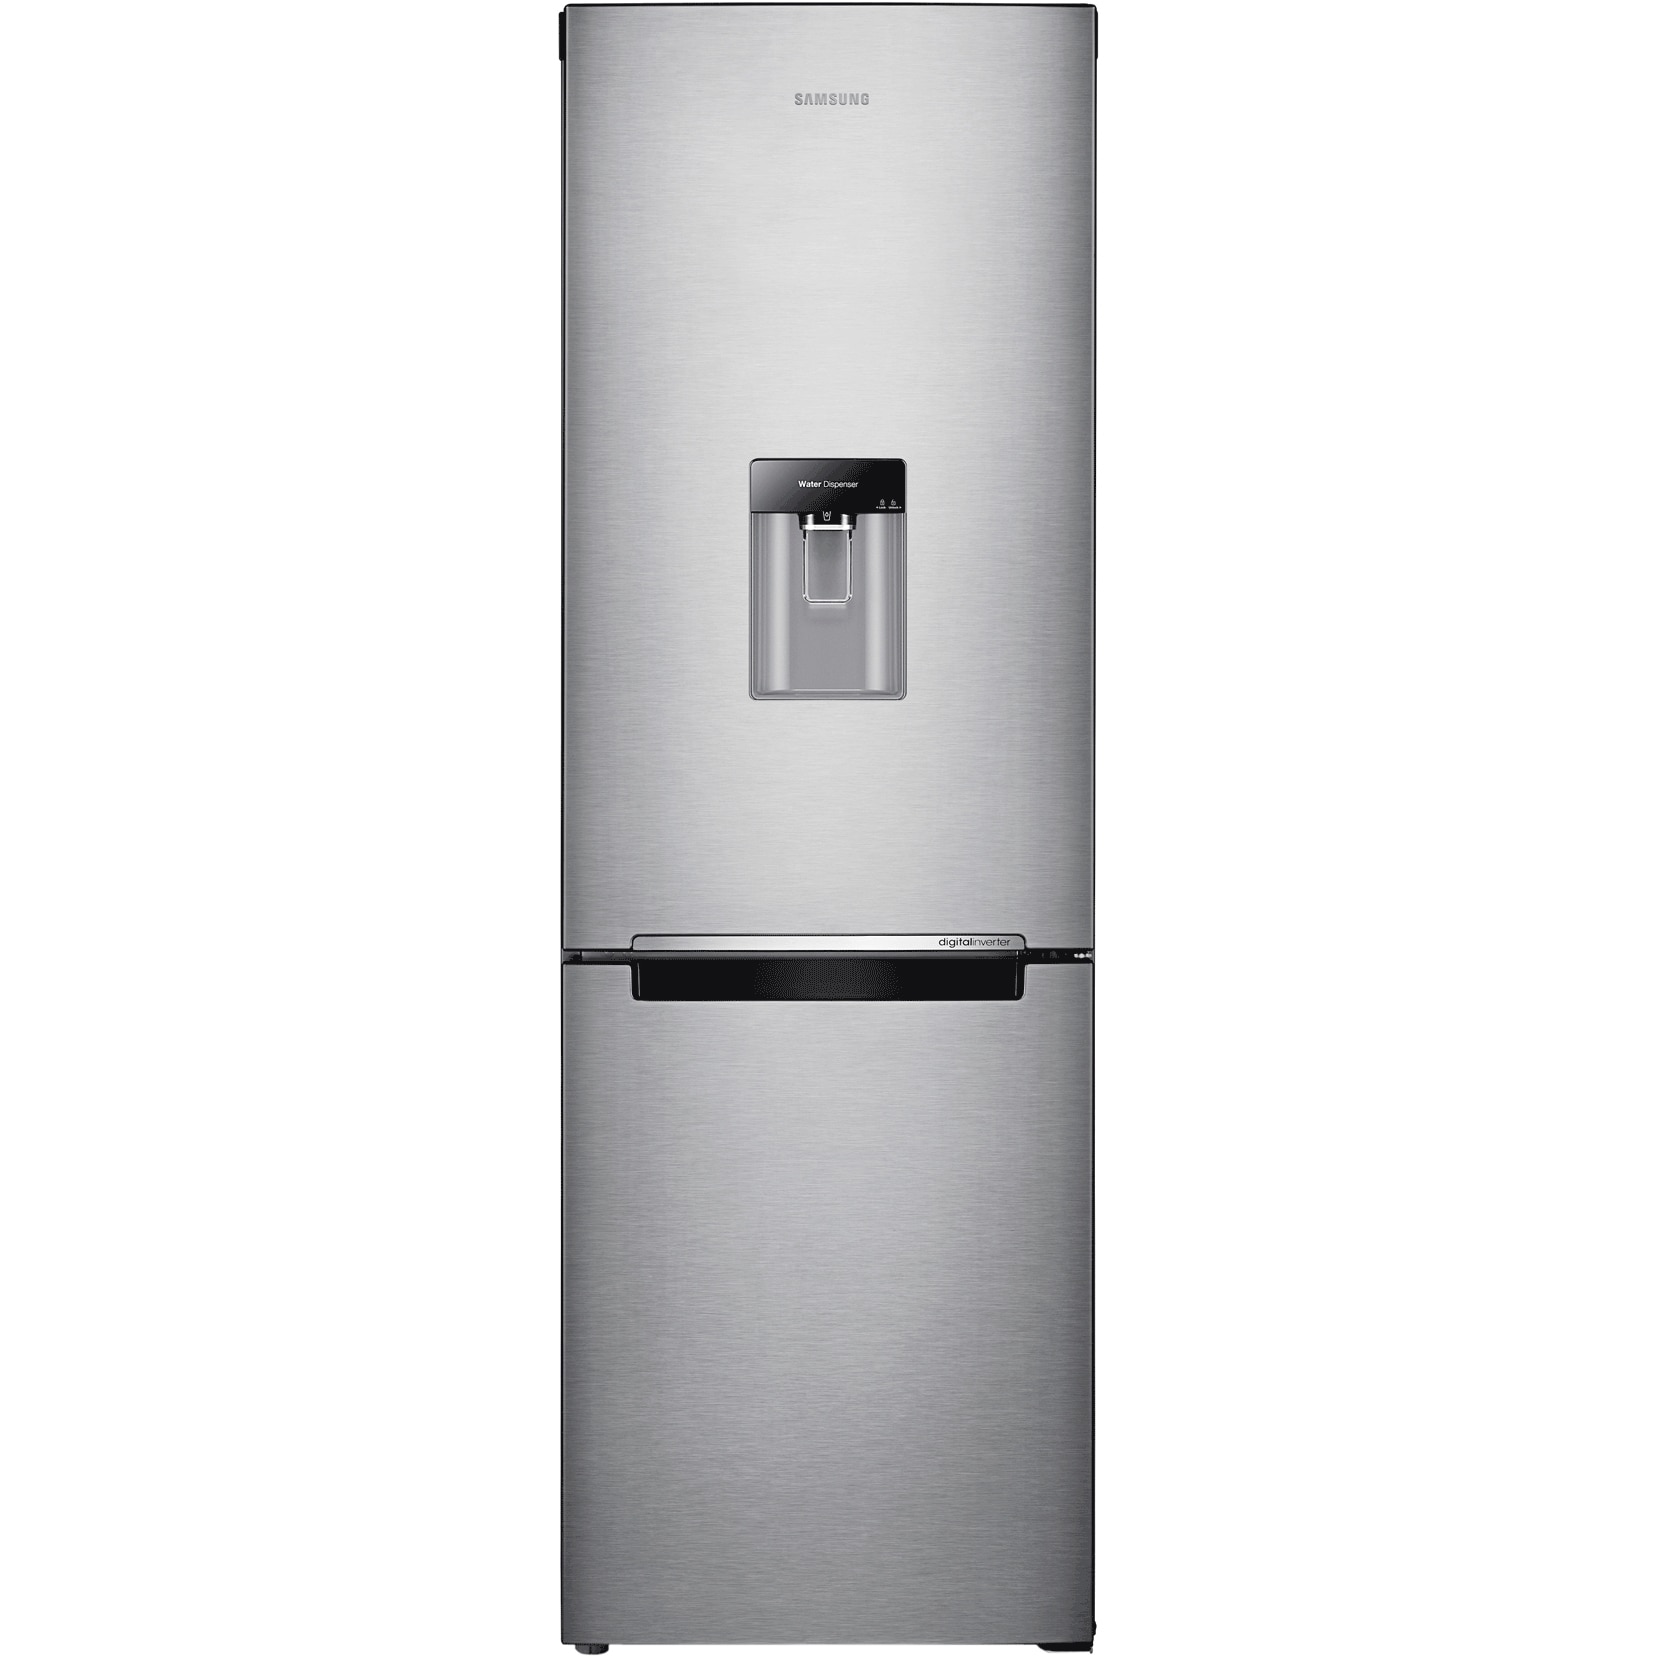 Хладилник Samsung RB31FWRNDSA с обем от 310 л.